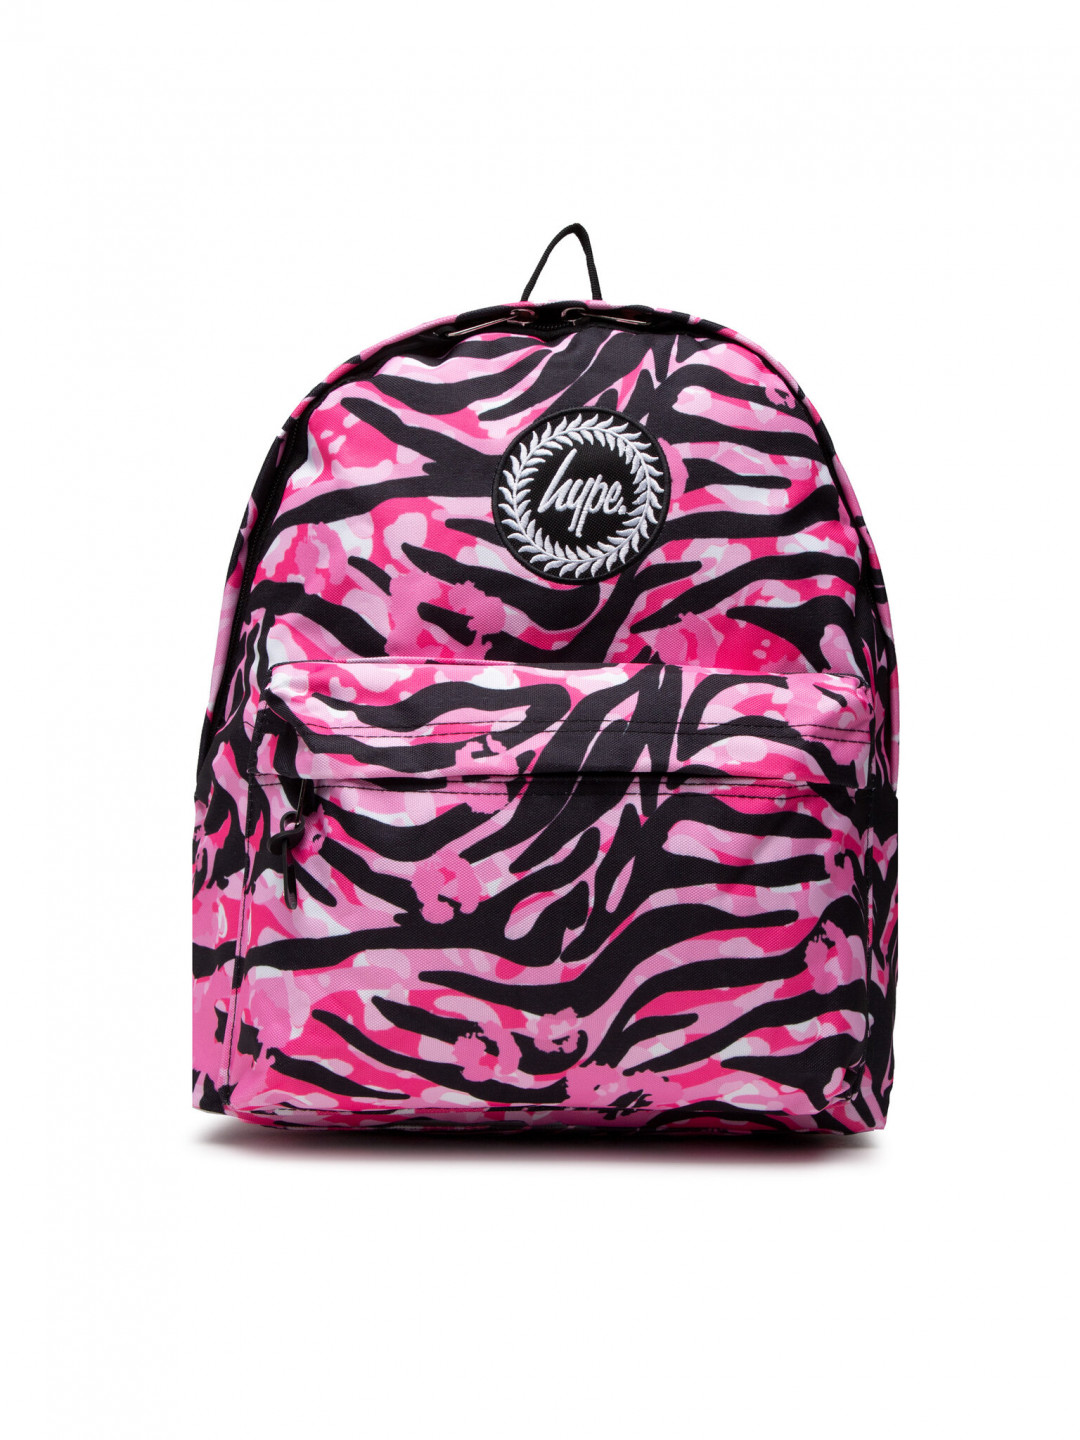 HYPE Batoh Pink Zebra Animal Backpack TWLG-728 Růžová